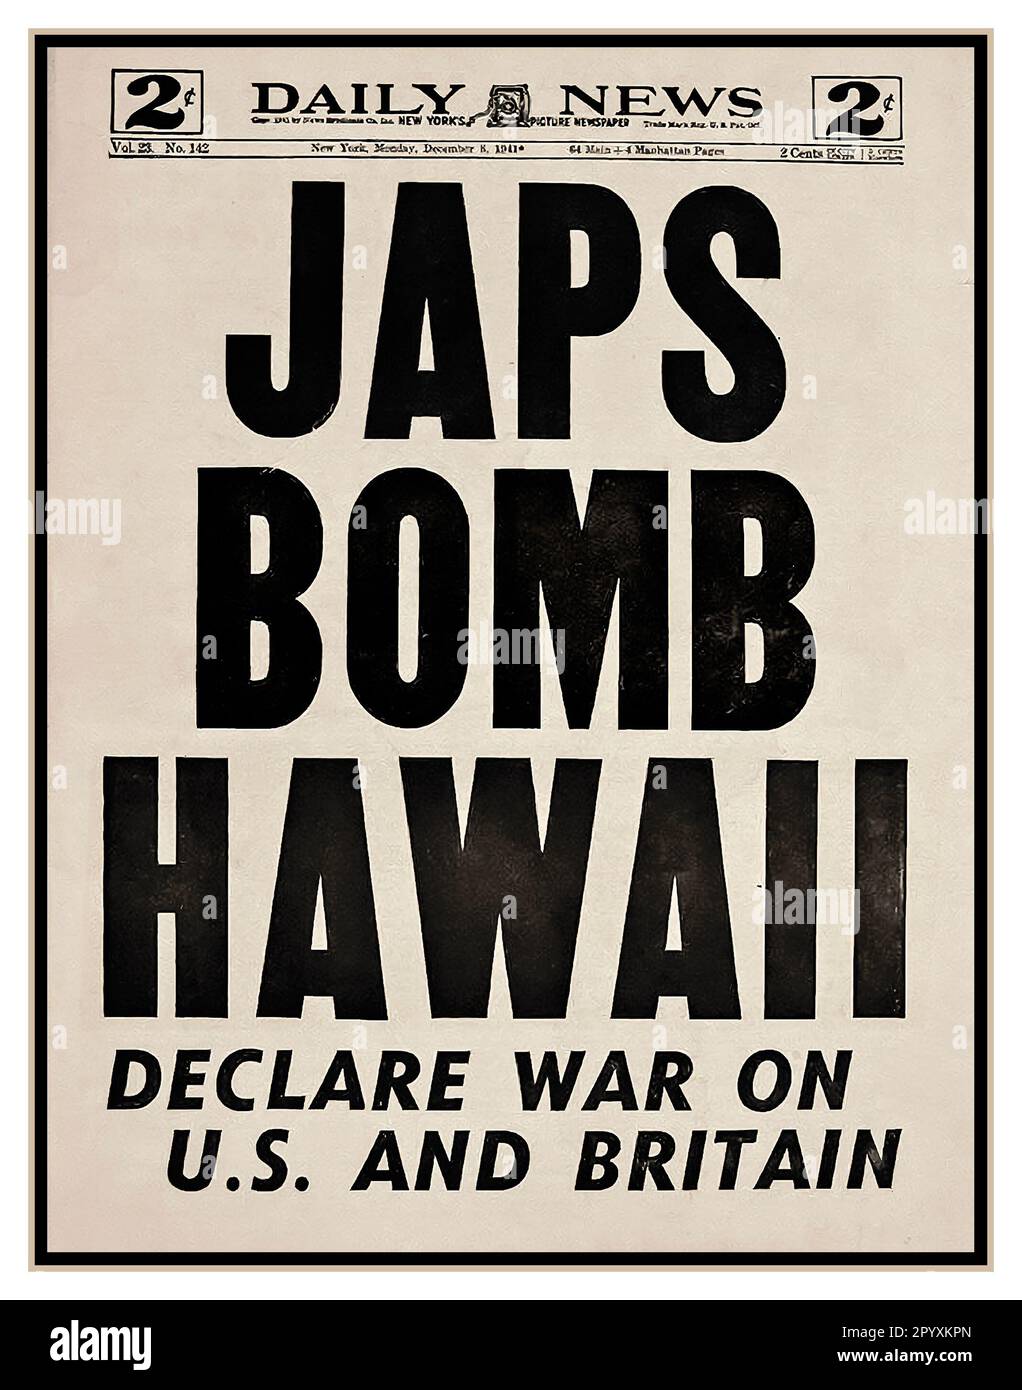 JAPS BOMBARDEA HAWAII Dic 8th titular del periódico. PEARL HARBOR 7 de diciembre de 1941 Las bombas llovieron sobre Pearl Harbor y Manila en un asalto repentino. El ataque a Pearl Harbor fue un ataque militar sorpresa del Servicio Aéreo de la Armada Imperial Japonesa contra Estados Unidos contra la base naval estadounidense en Pearl Harbor en Honolulu, Hawai, justo antes de las 8:00 a.m. (hora local) el domingo 7 de diciembre de 1941. Foto de stock